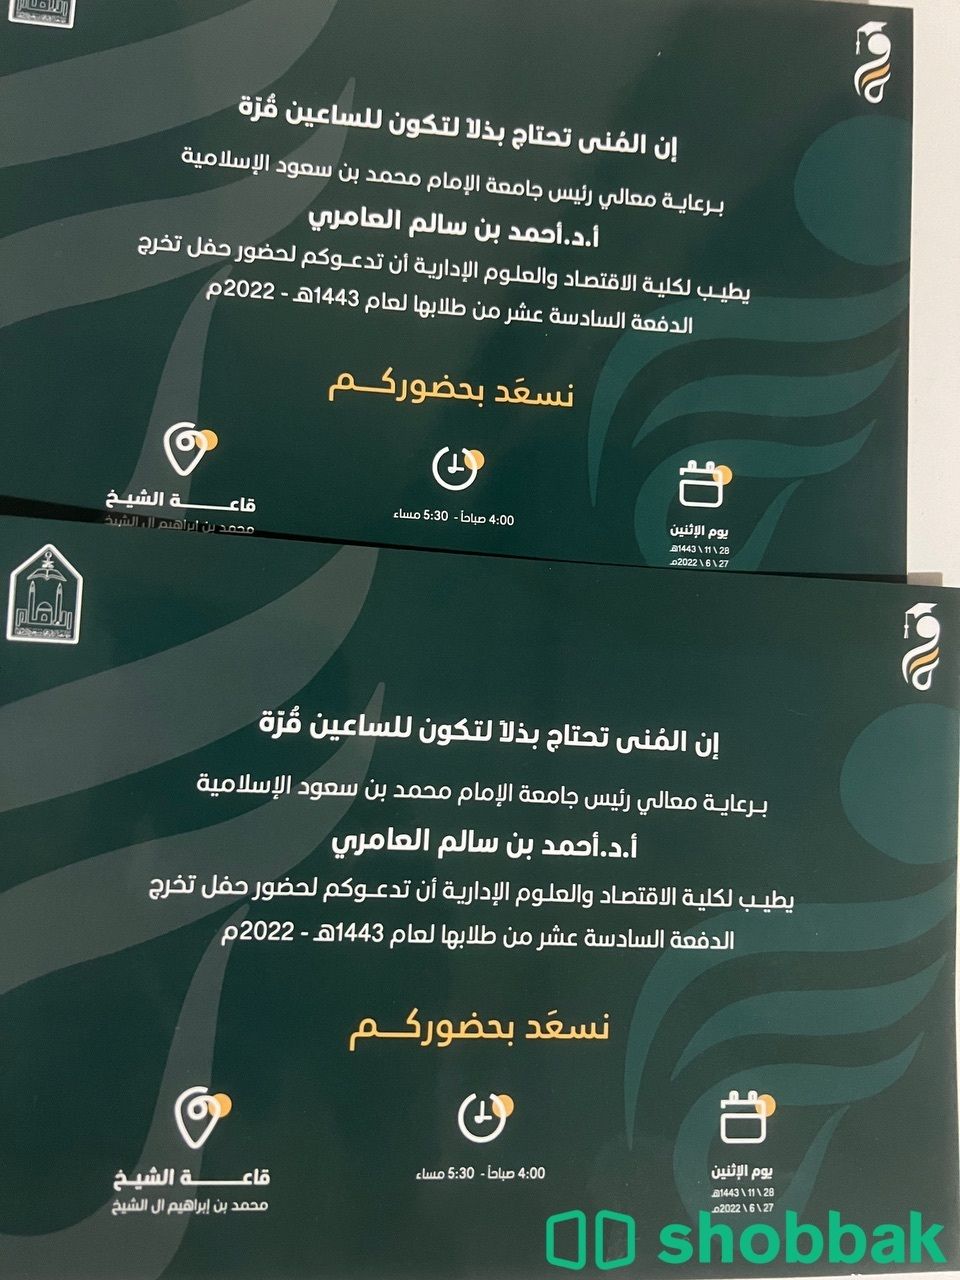 تذكرة حفل تخرج جامعة الامام كلية الاقتصاد Shobbak Saudi Arabia